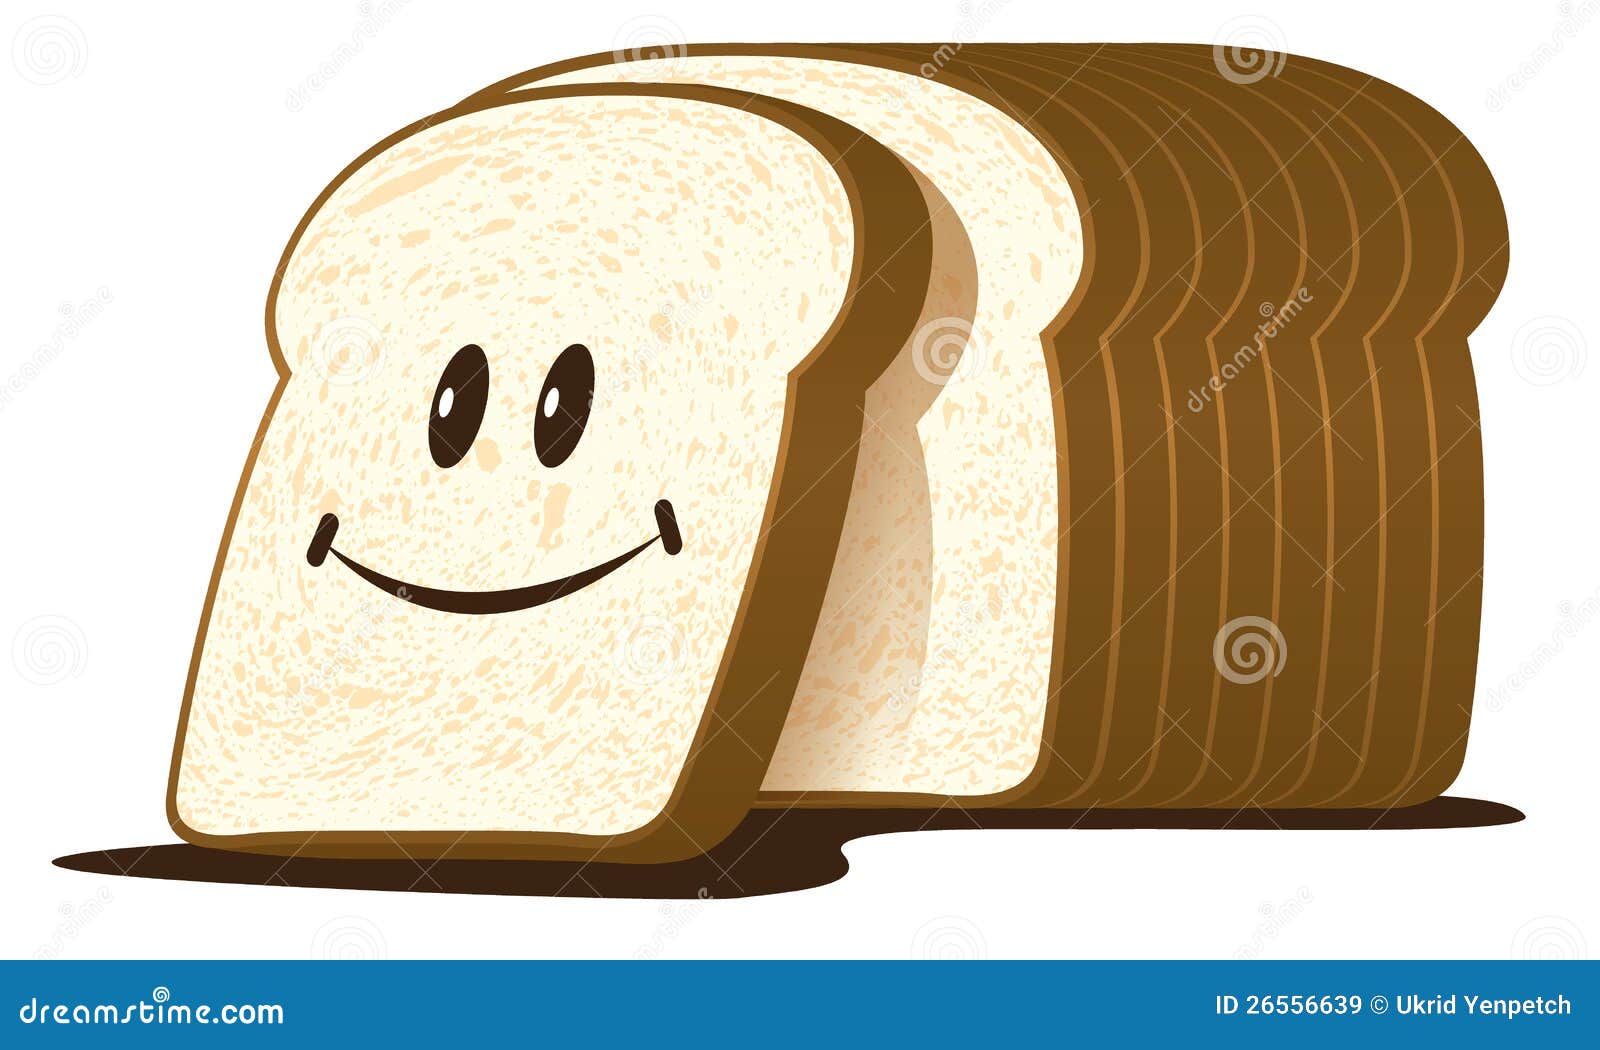 Cut Bread Stock Illustrations – 8,764 Cut Bread Stock Illustrations,  Vectors & Clipart - Dreamstime